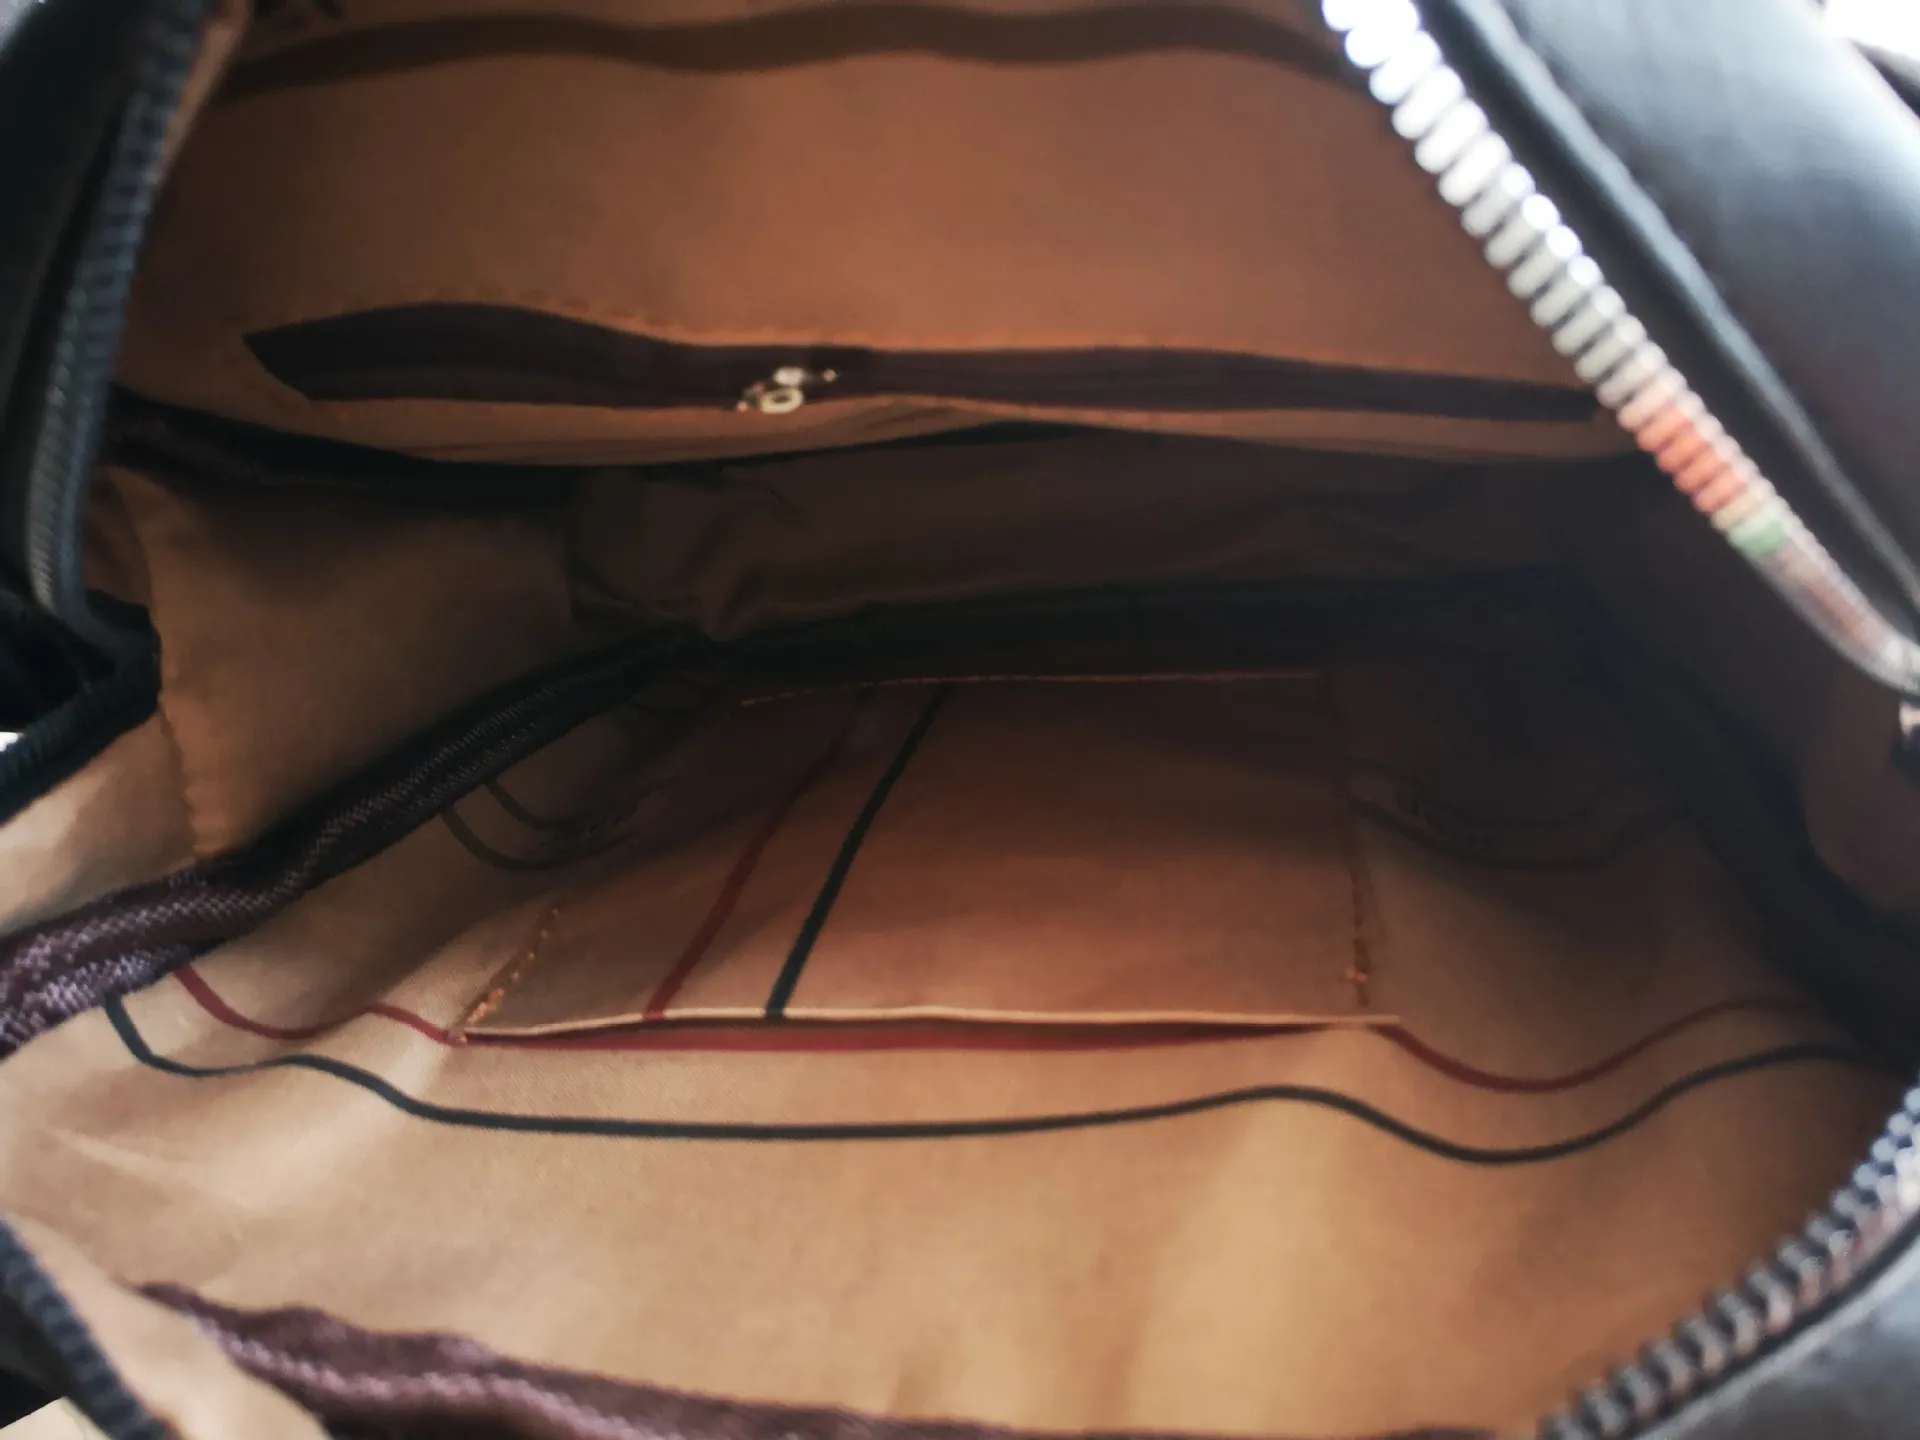 New Men's Casual Briefcase One Shoulder Diagonal Bag Simple Design Handbag